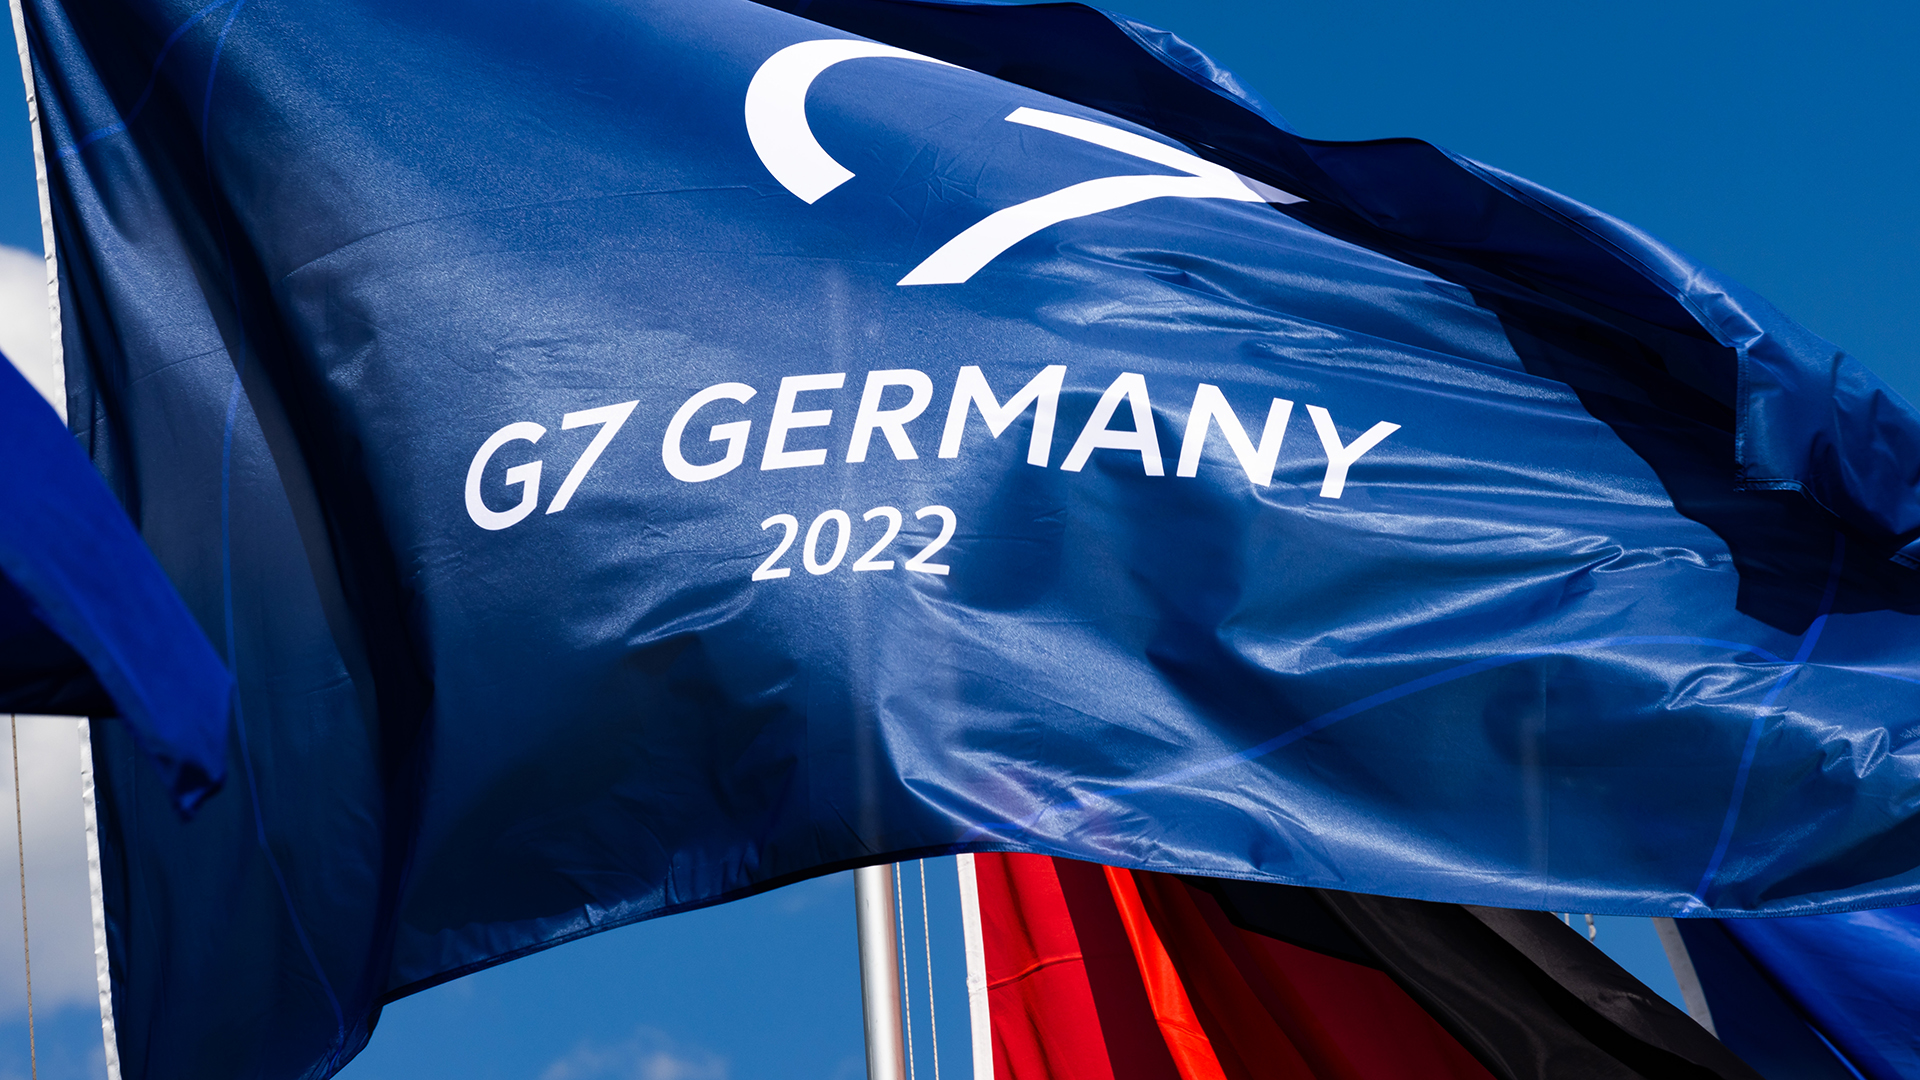 Das Logo für die deutsche G7-Präsidentschaft 2022 | picture alliance/dpa